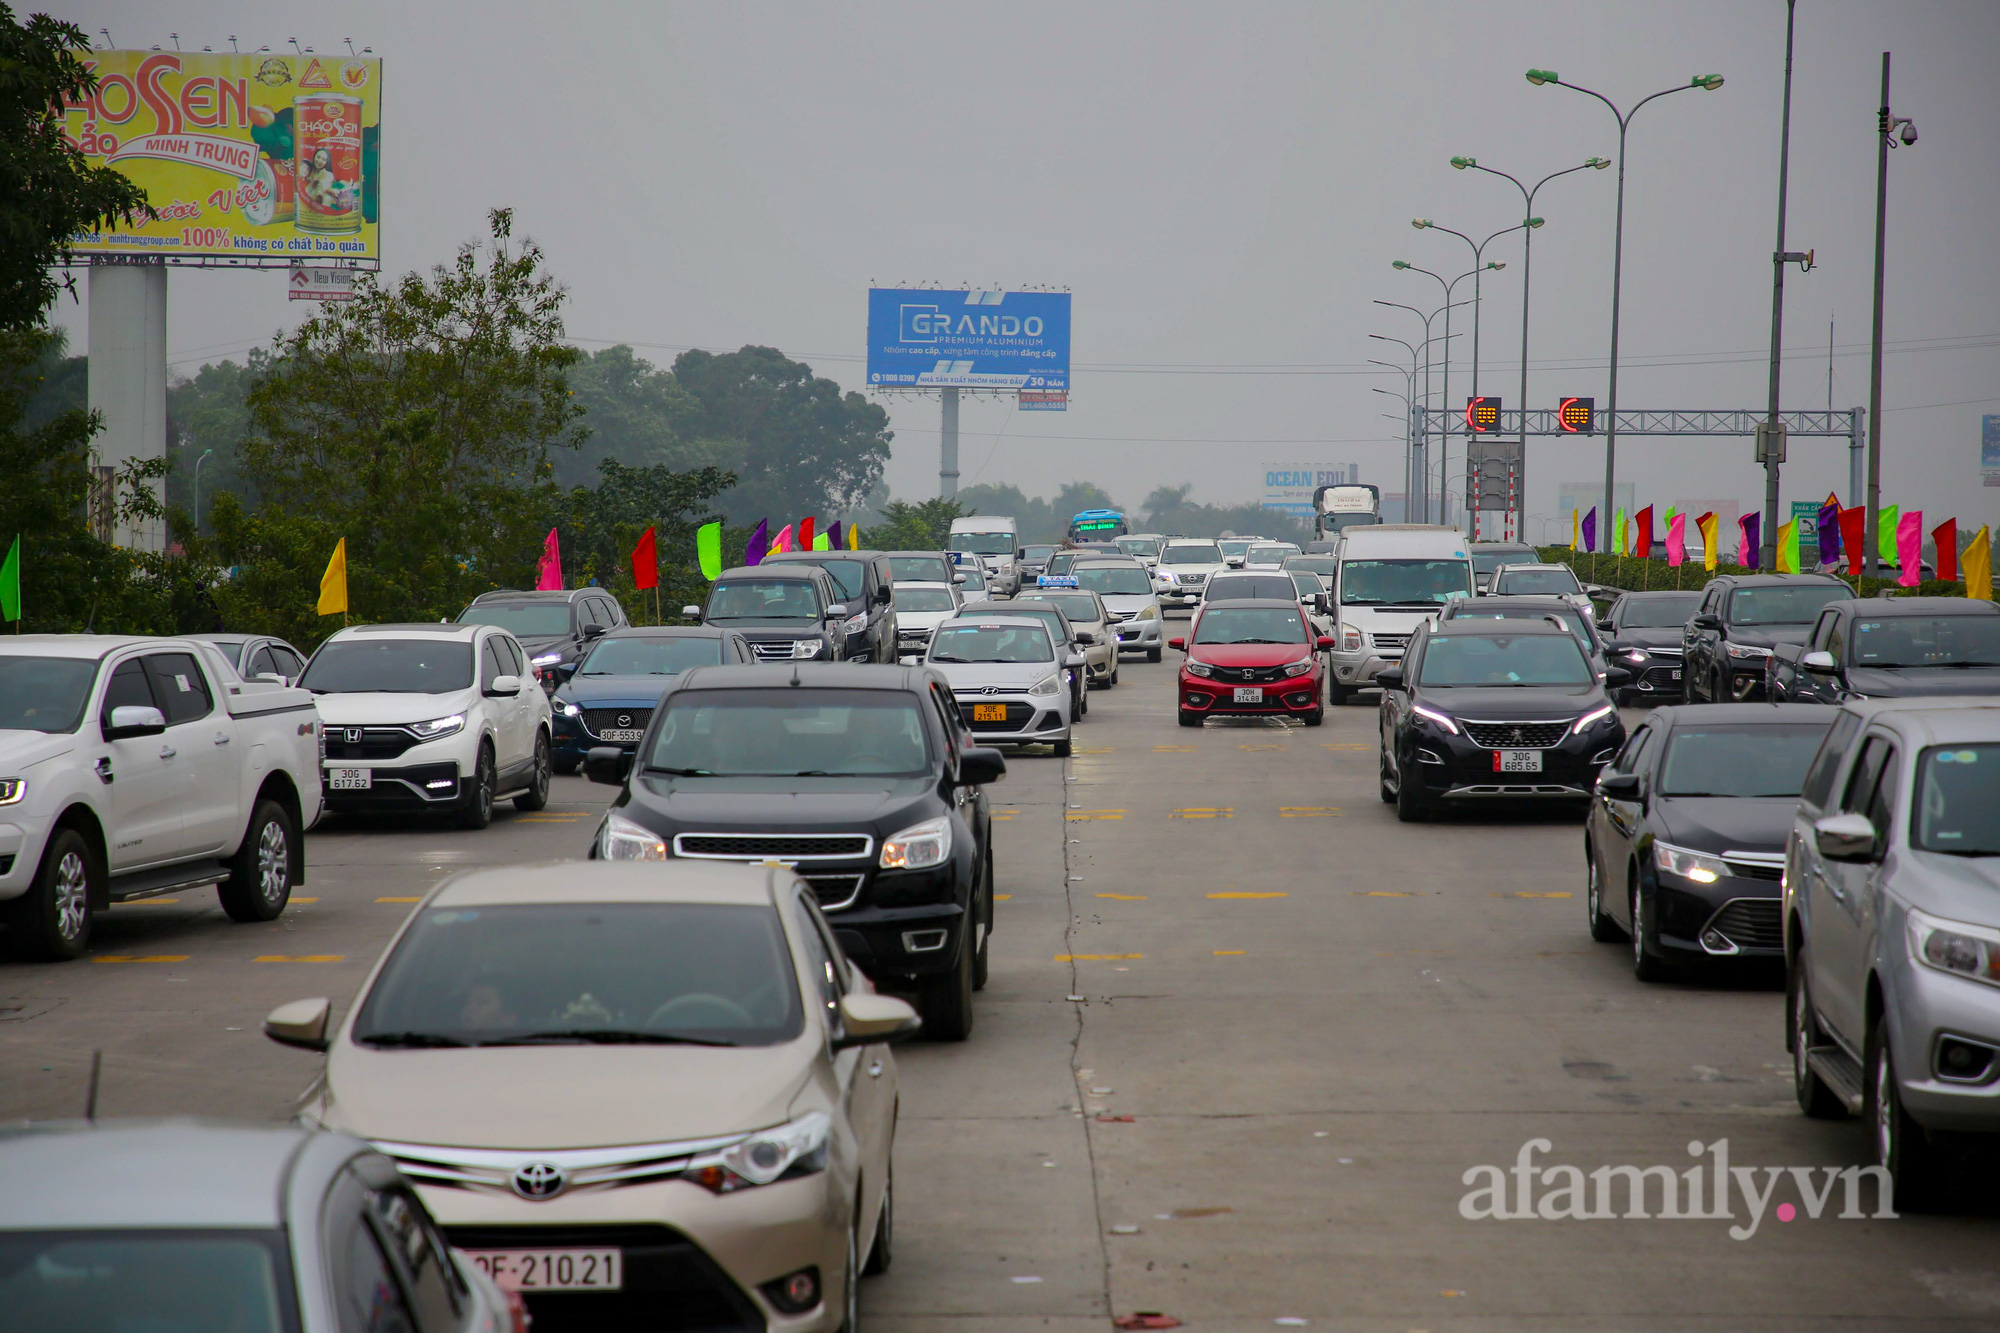 Hà Nội: Hàng nghìn người chạy xe máy trùm kín áo mưa, ùn ùn rời phố về quê ăn Tết - Ảnh 4.